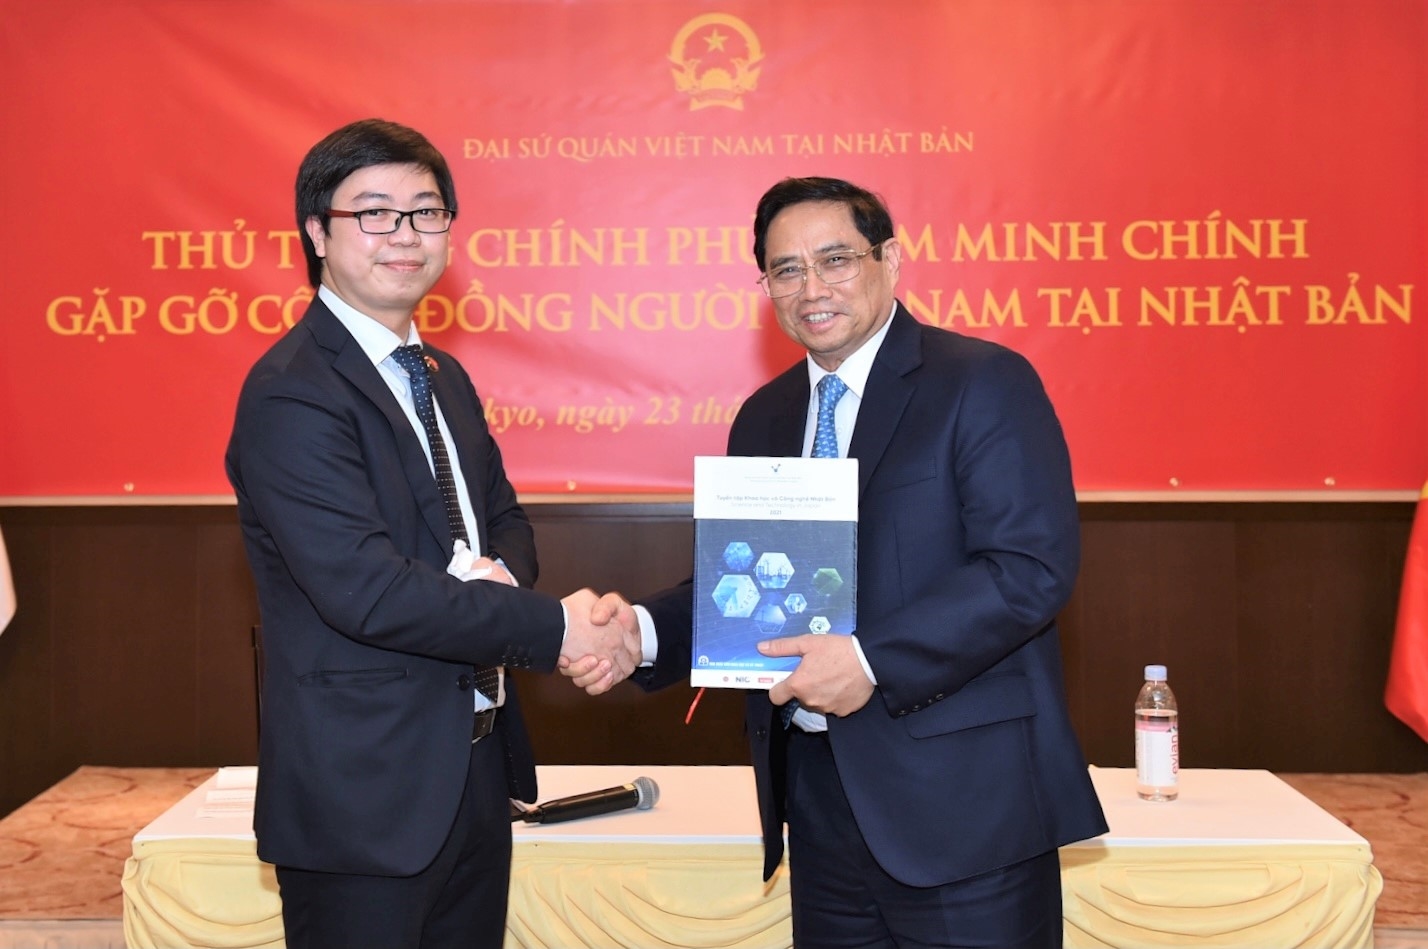 Sinh viên Nguyễn Đức Anh, Chủ tịch Hội Sinh viên Việt Nam tại Nhật Bản kính tặng Thủ tướng cuốn sách về KHCN Nhật Bản. Ảnh: VGP/Nhật Bắc